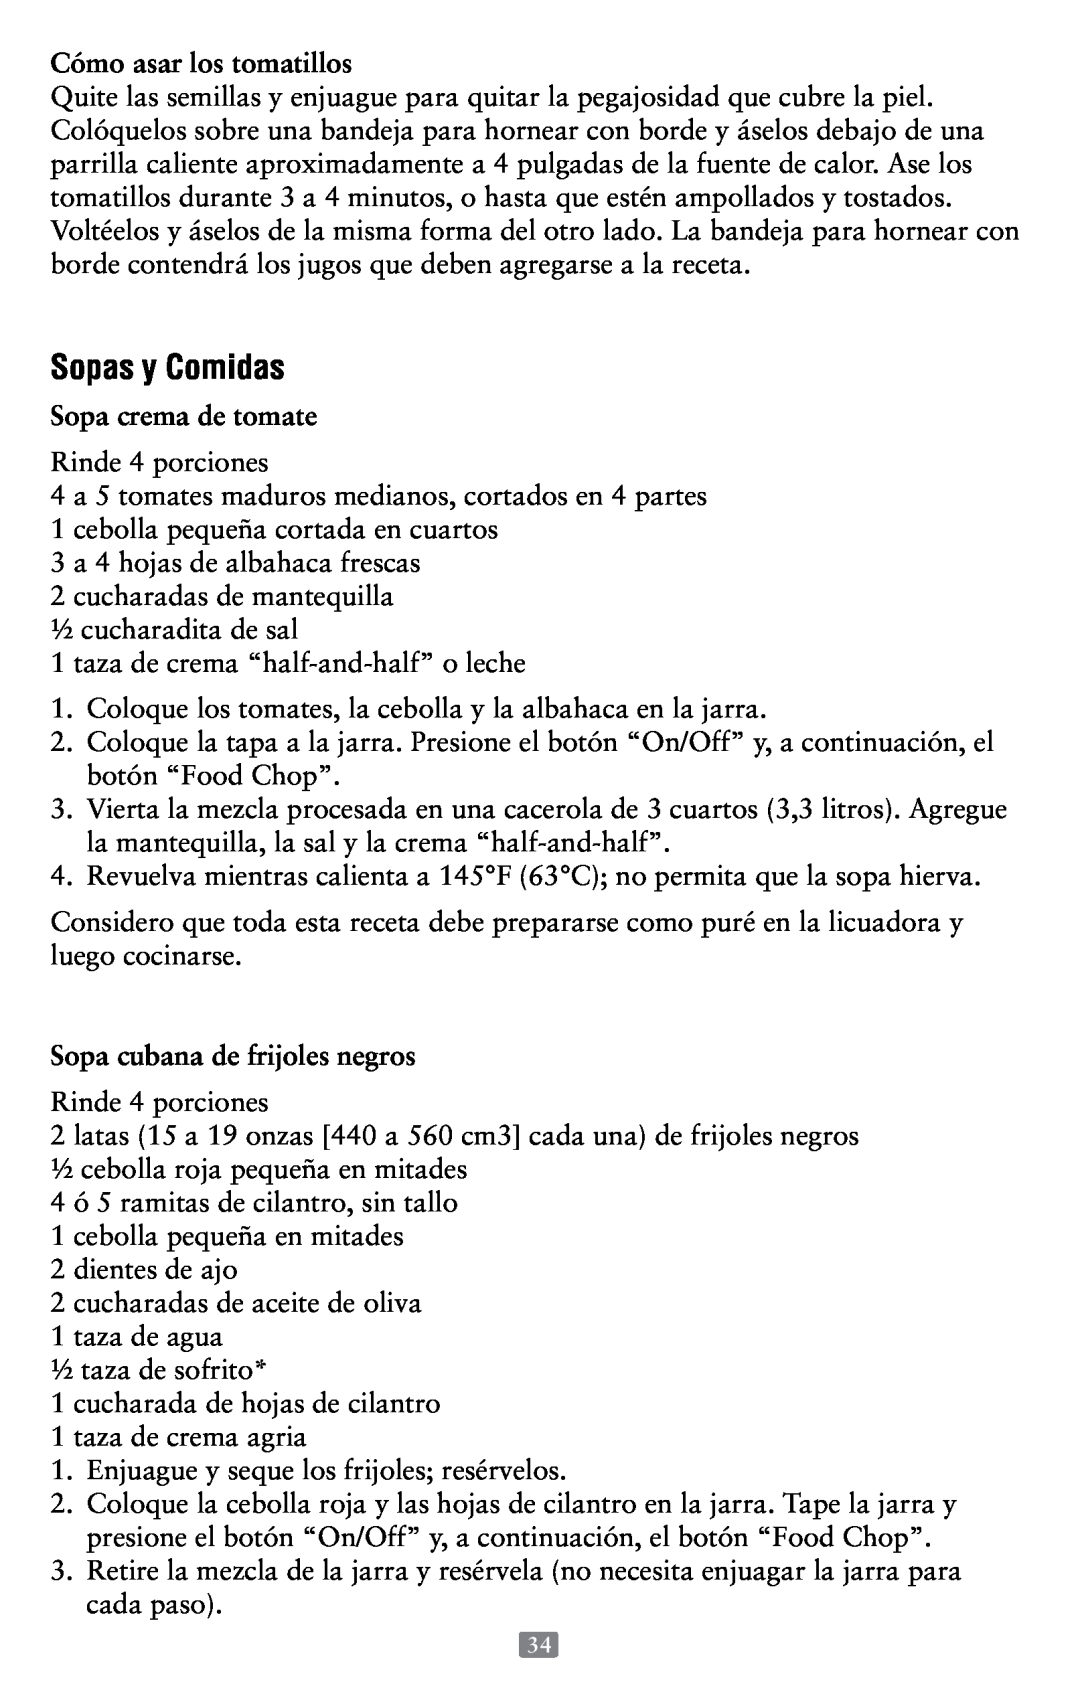 Oster P.N. 118532-005-000 Sopas y Comidas, Cómo asar los tomatillos, Sopa crema de tomate, Sopa cubana de frijoles negros 